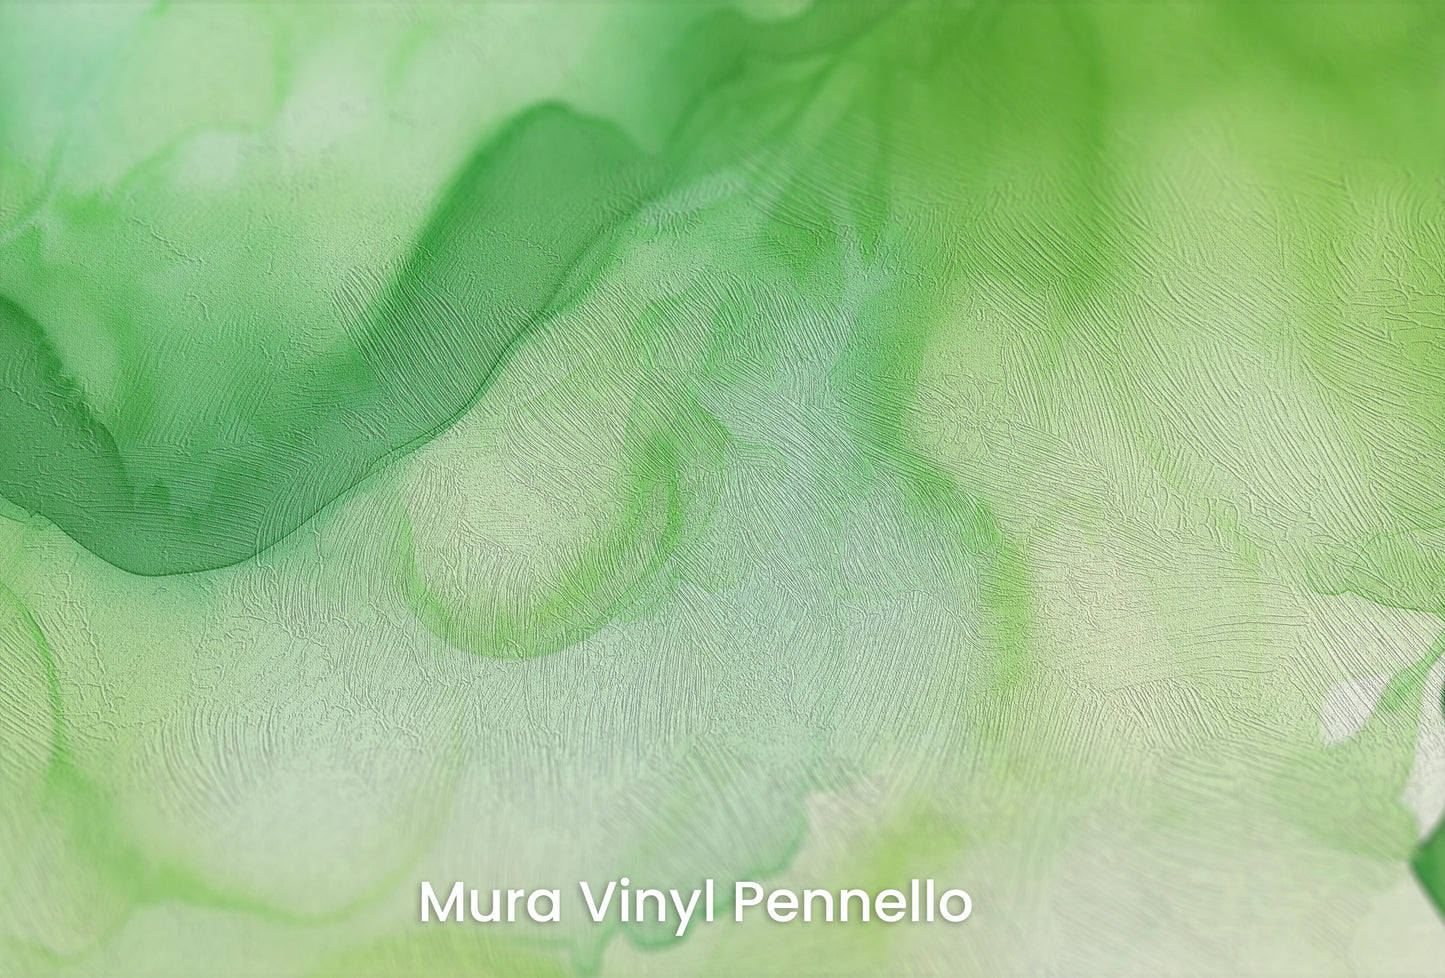 Zbliżenie na artystyczną fototapetę o nazwie Zielona Fantazja na podłożu Mura Vinyl Pennello - faktura pociągnięć pędzla malarskiego.